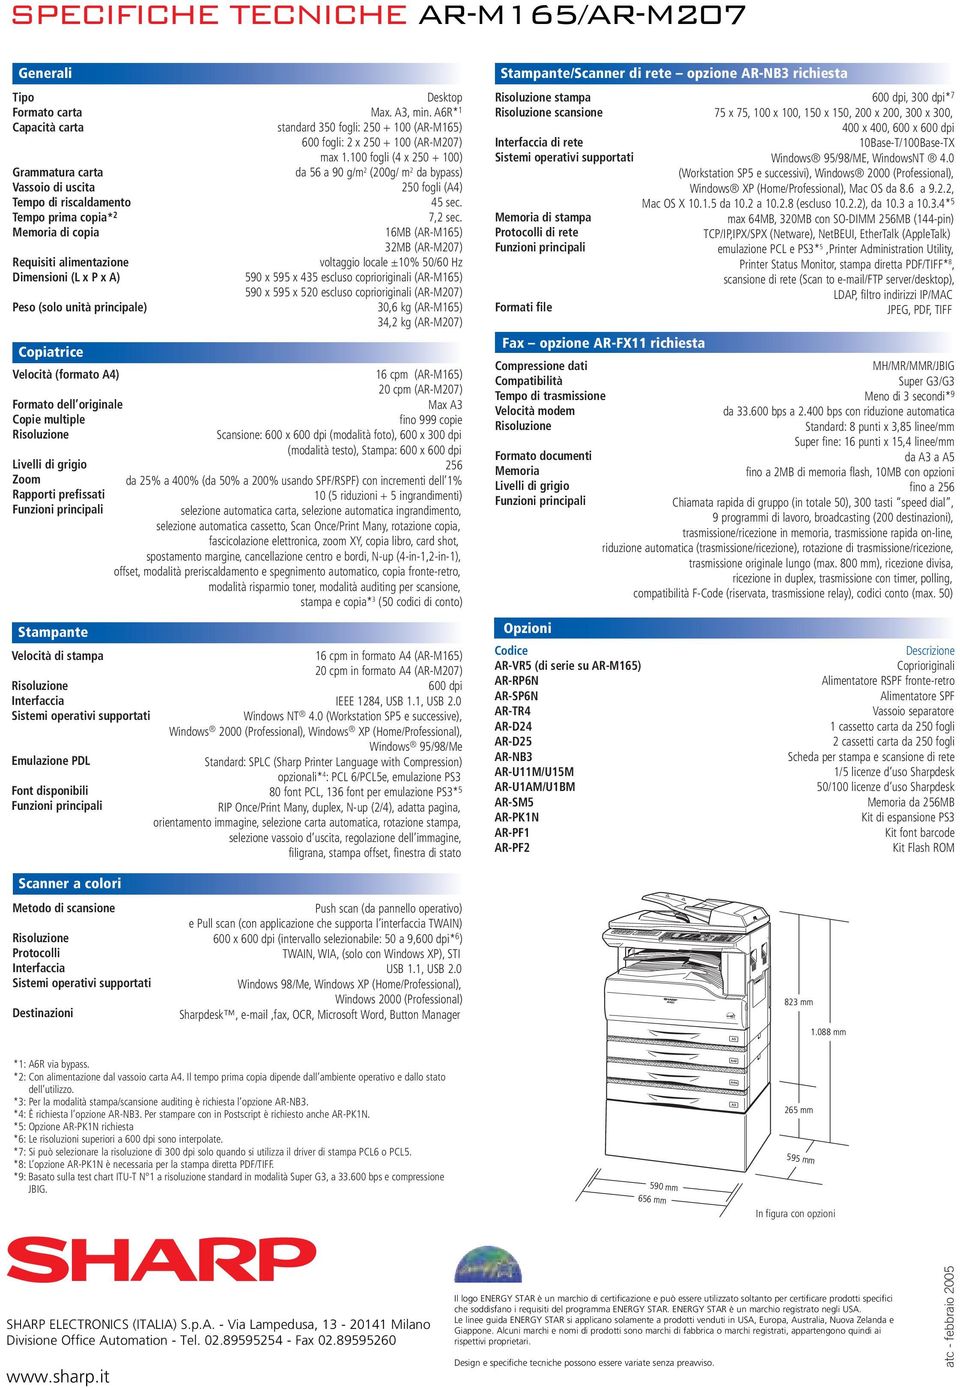 Stampante Velocità di stampa Risoluzione Interfaccia Sistemi operativi supportati Emulazione PDL Font disponibili Funzioni principali Desktop Max. A3, min.